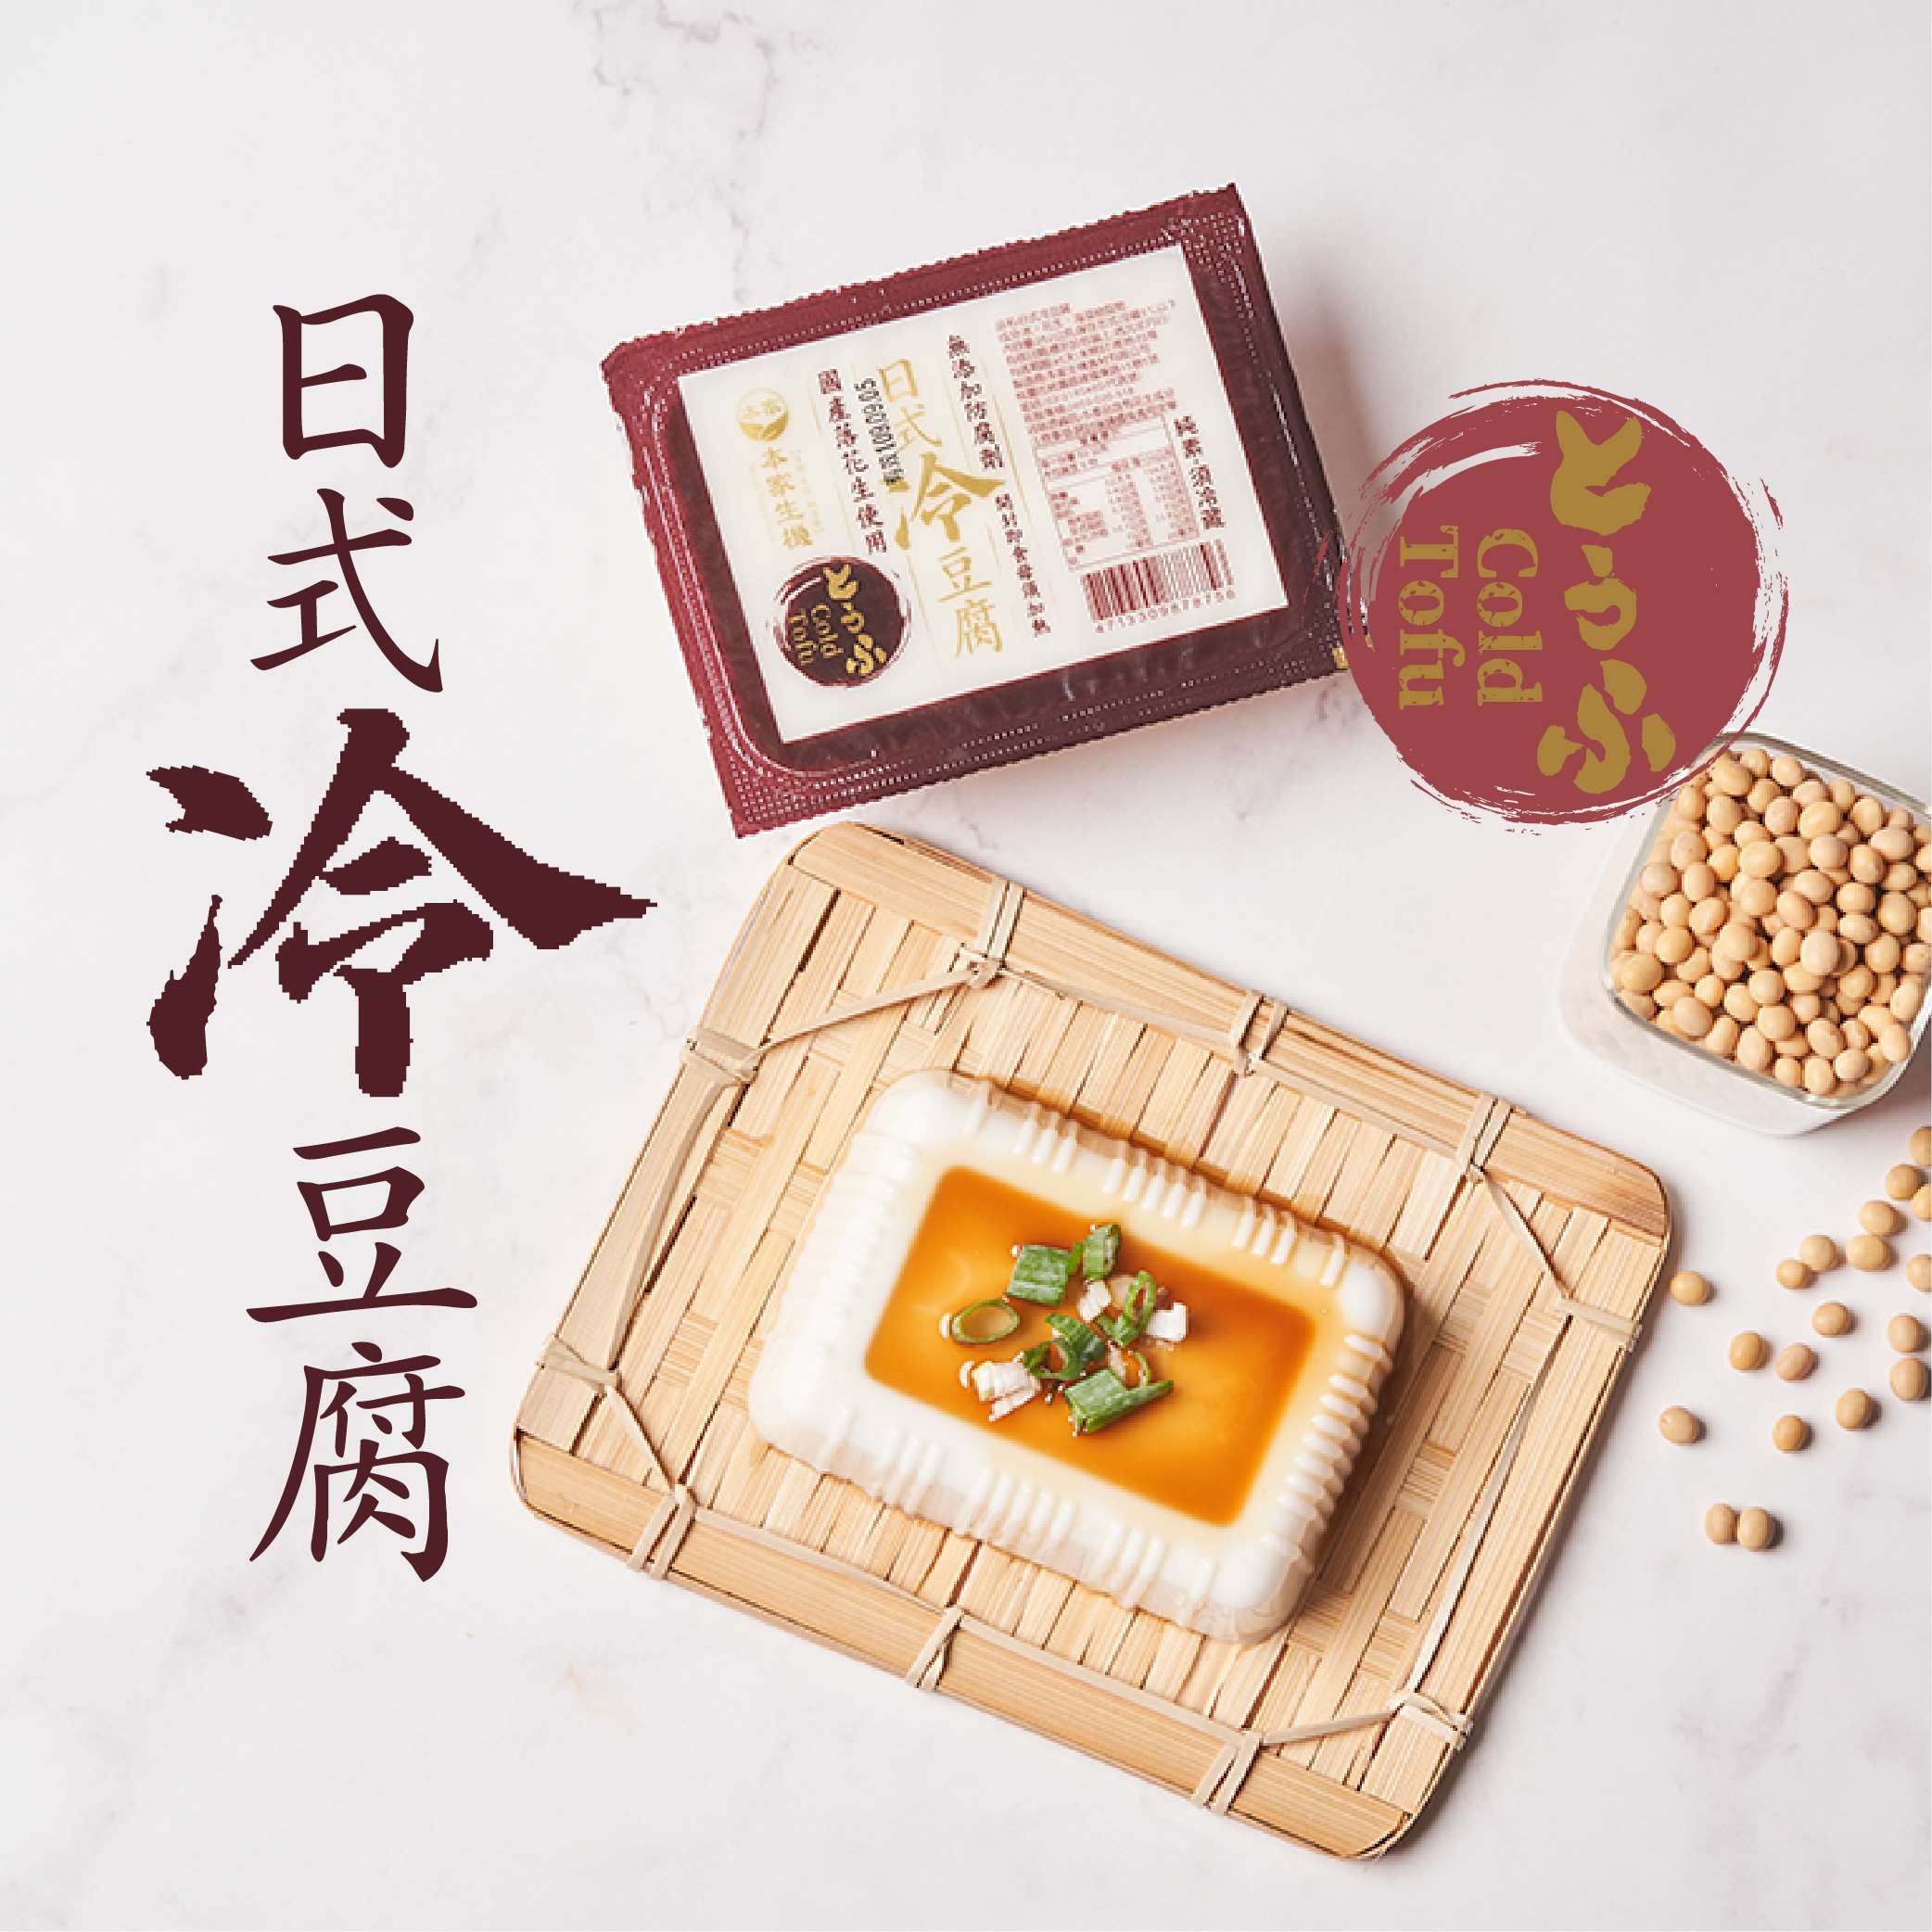 0430結-日式冷豆腐$95元/組(1組=2盒)